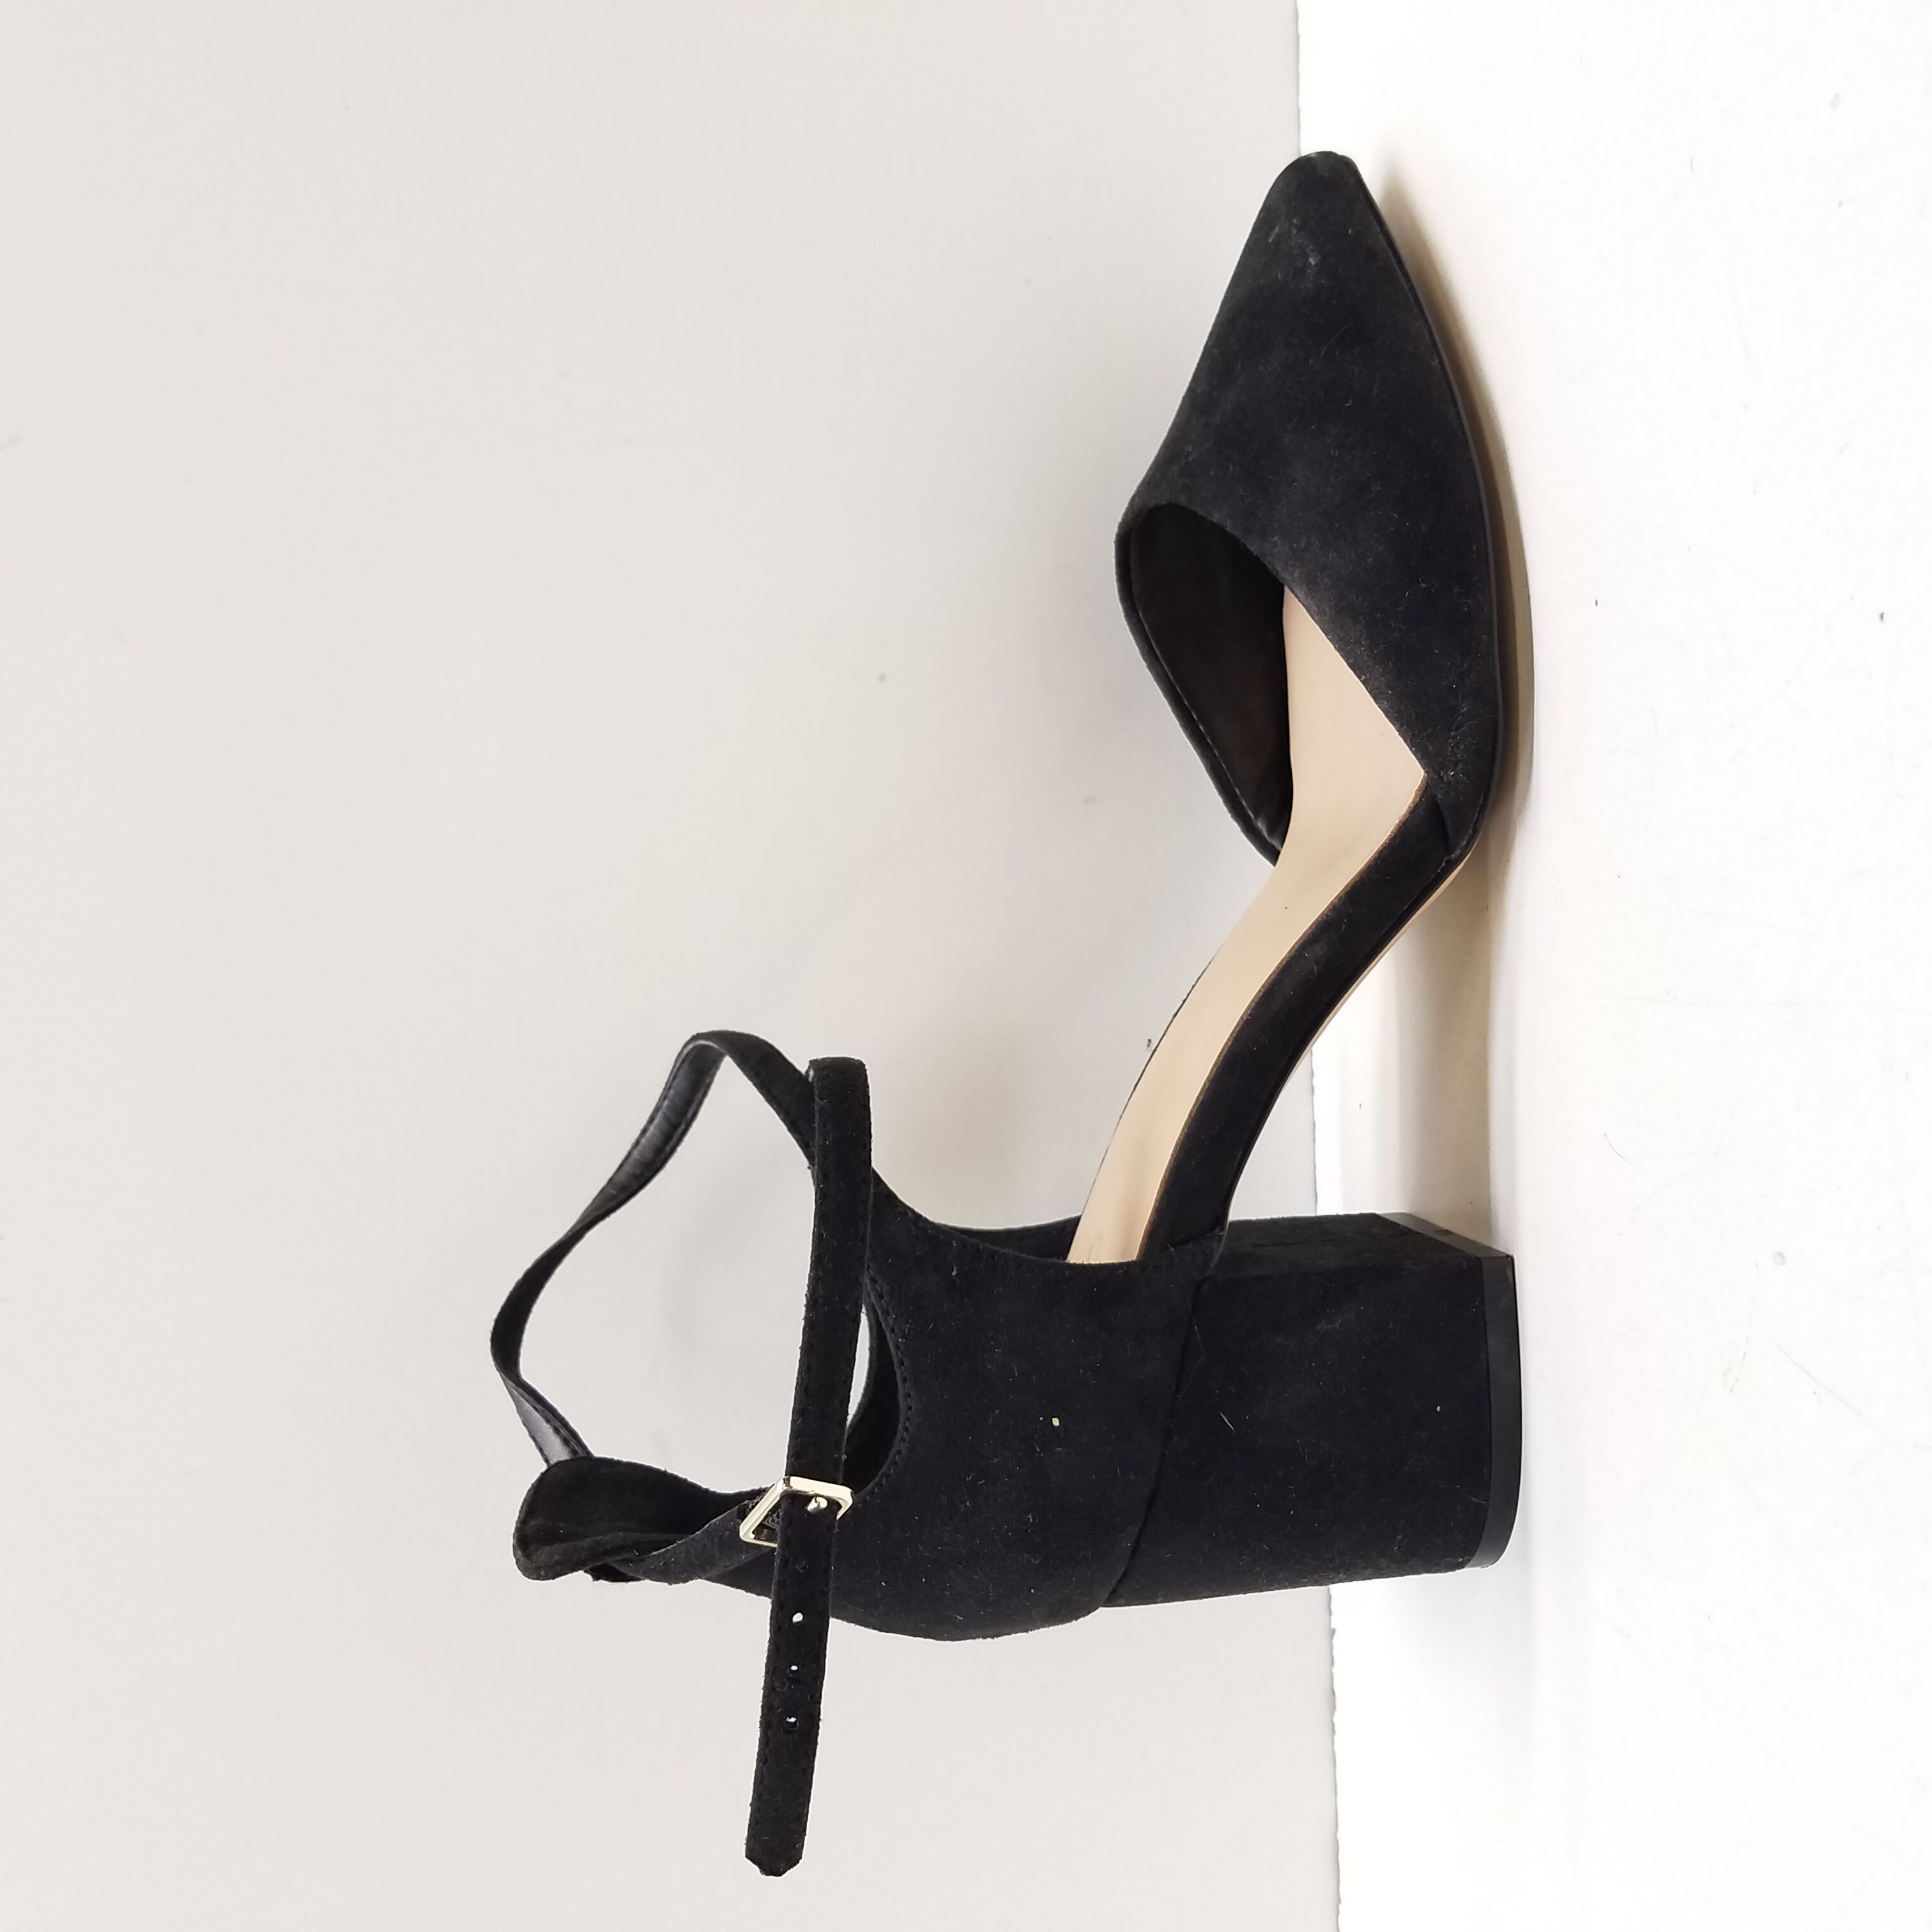 Geometric Hollow Metal Block Heel | Buy women Block Heel shoes Online